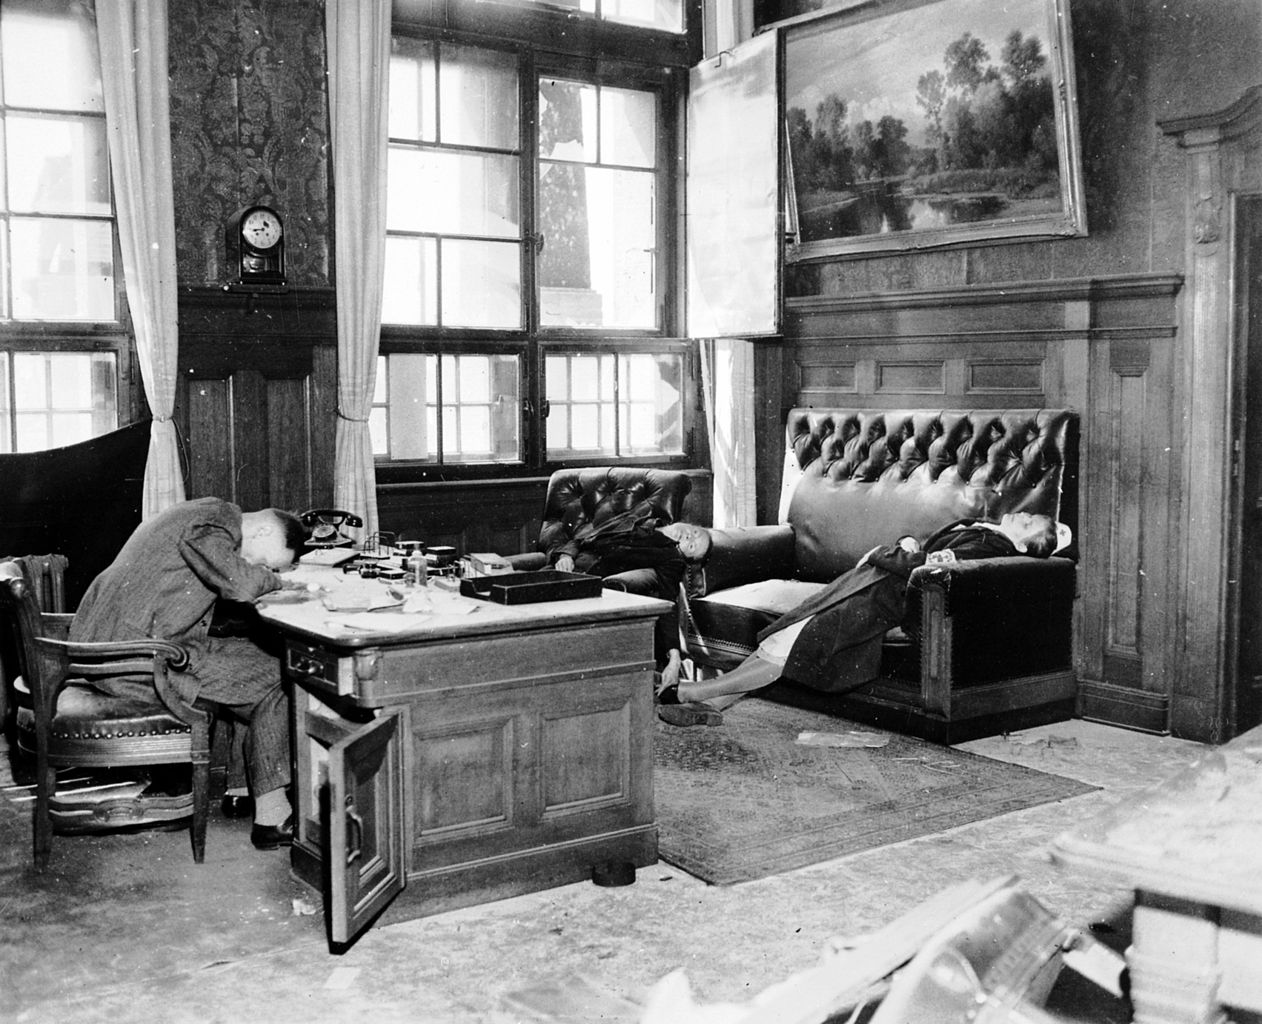 1945. Április 18. Dr. jur. Ernst Kurt Lisso Lipcse alpolgármestere, felesége és lánya ciánkapszulával lettek öngyilkosok a városházán az amerikai csapatok megérkezése előtt néhány órával..jpg